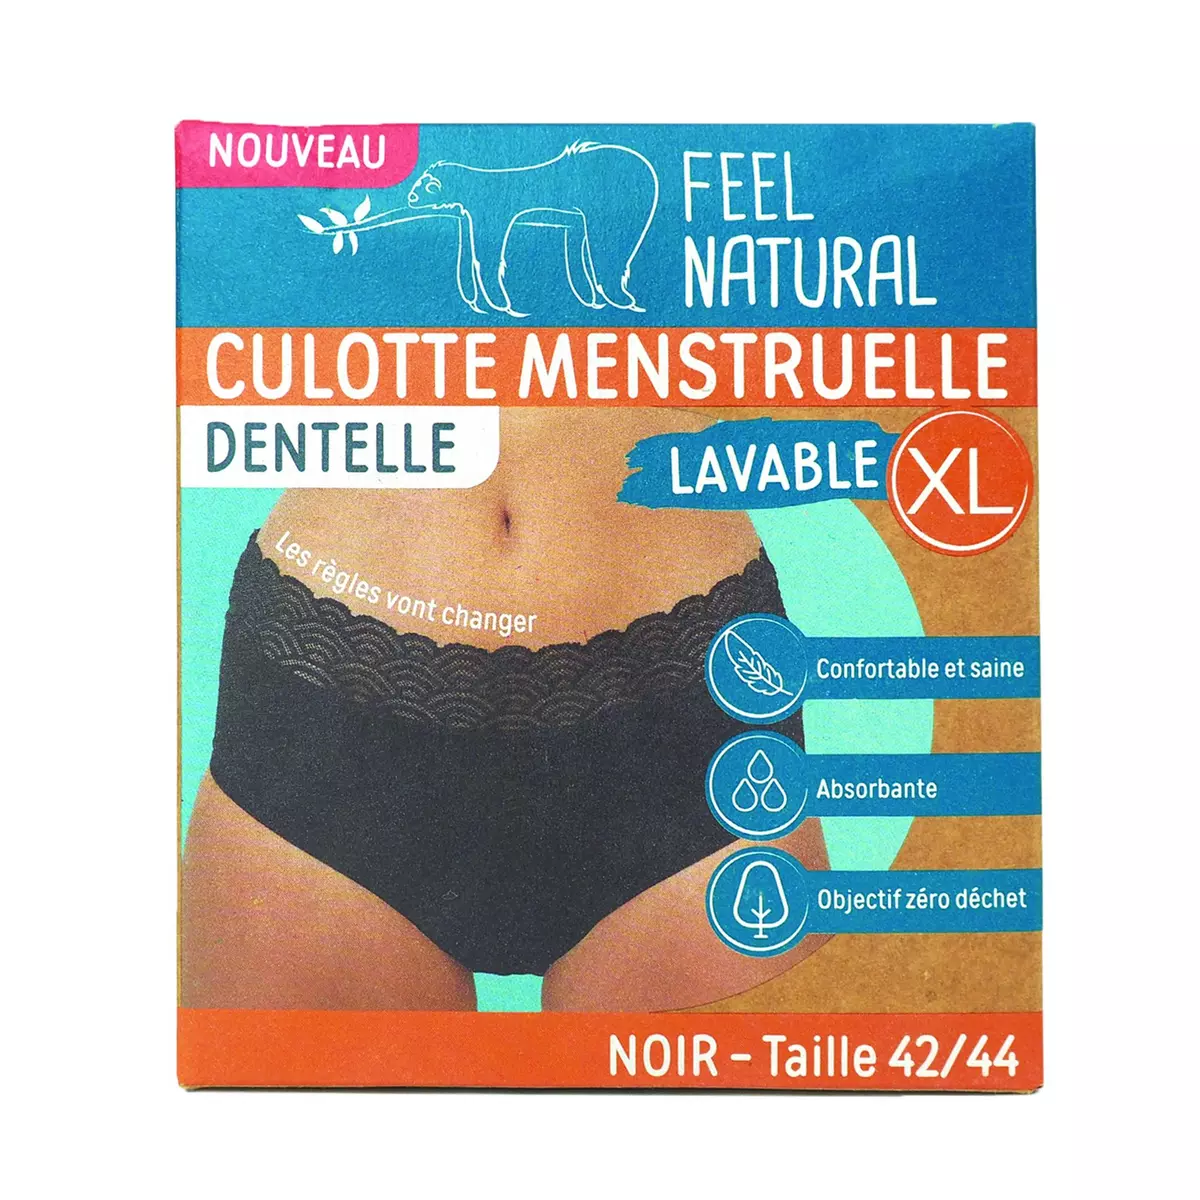 Promo Culottes Menstruelles- Feel Natural chez Costco